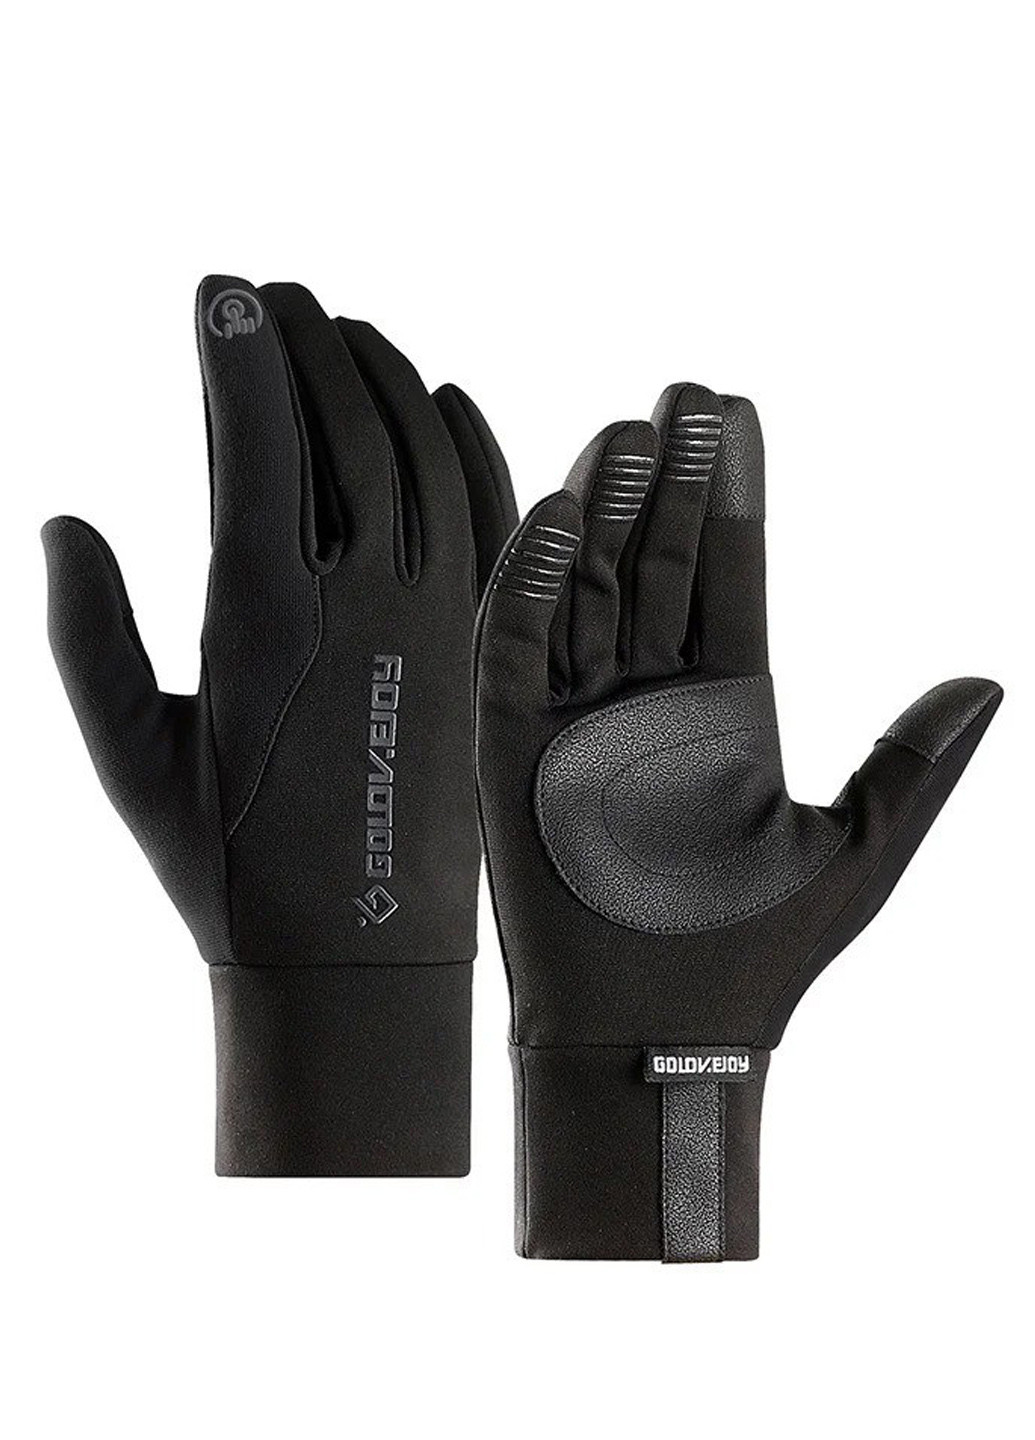 Чоловічі рукавички сенсорні чорні (1316224418) Golovejoy написи чорні спортивні кашемір, нейлон, поліестер